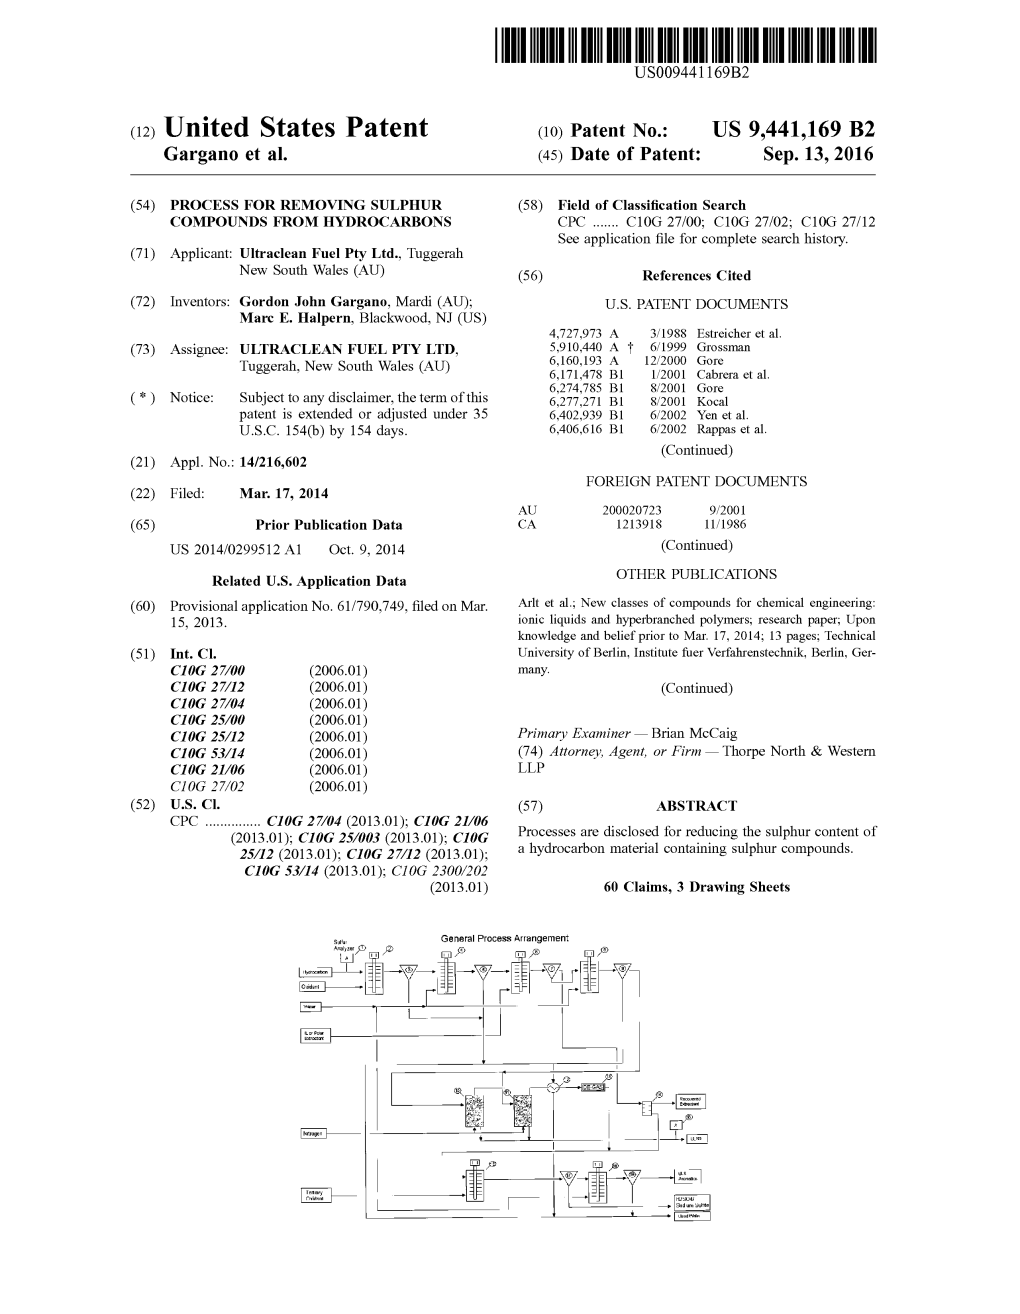 (12) United States Patent (10) Patent No.: US 9,441,169 B2 Gargano Et Al